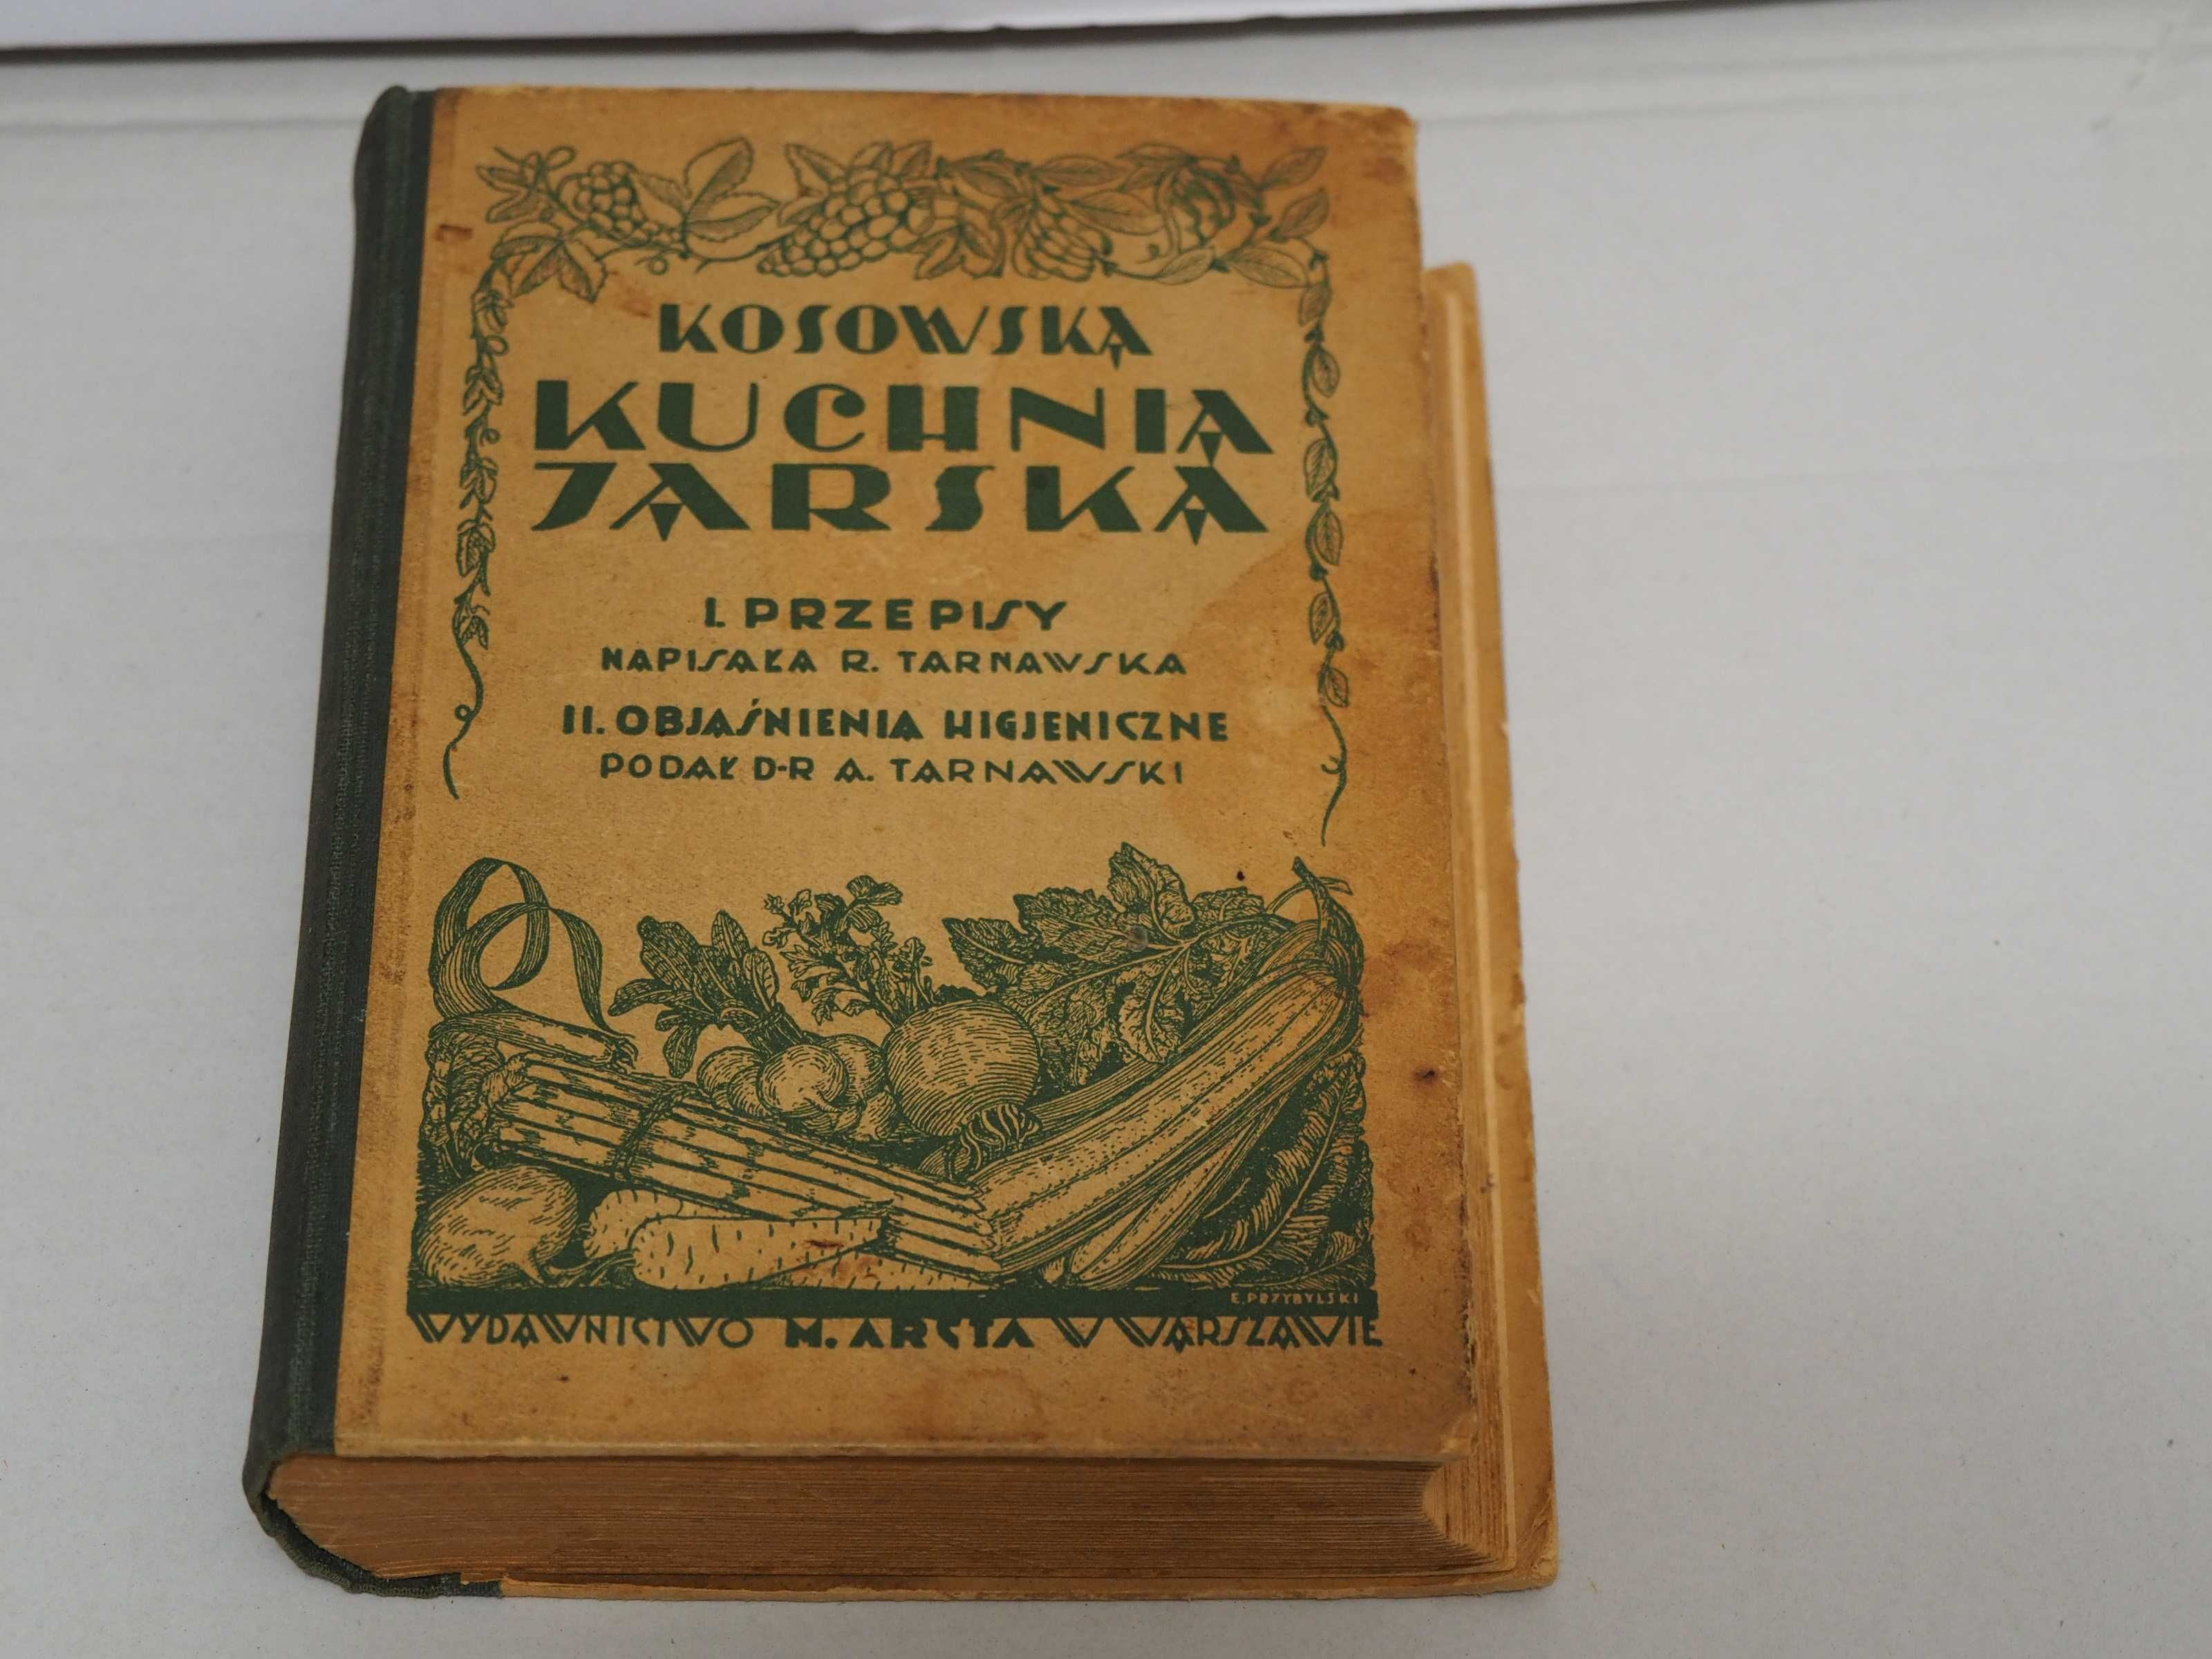 Kosowska Kuchnia Jarska ksiazka Twarda oprawa 1929 M.Arcta R.Tarnawska